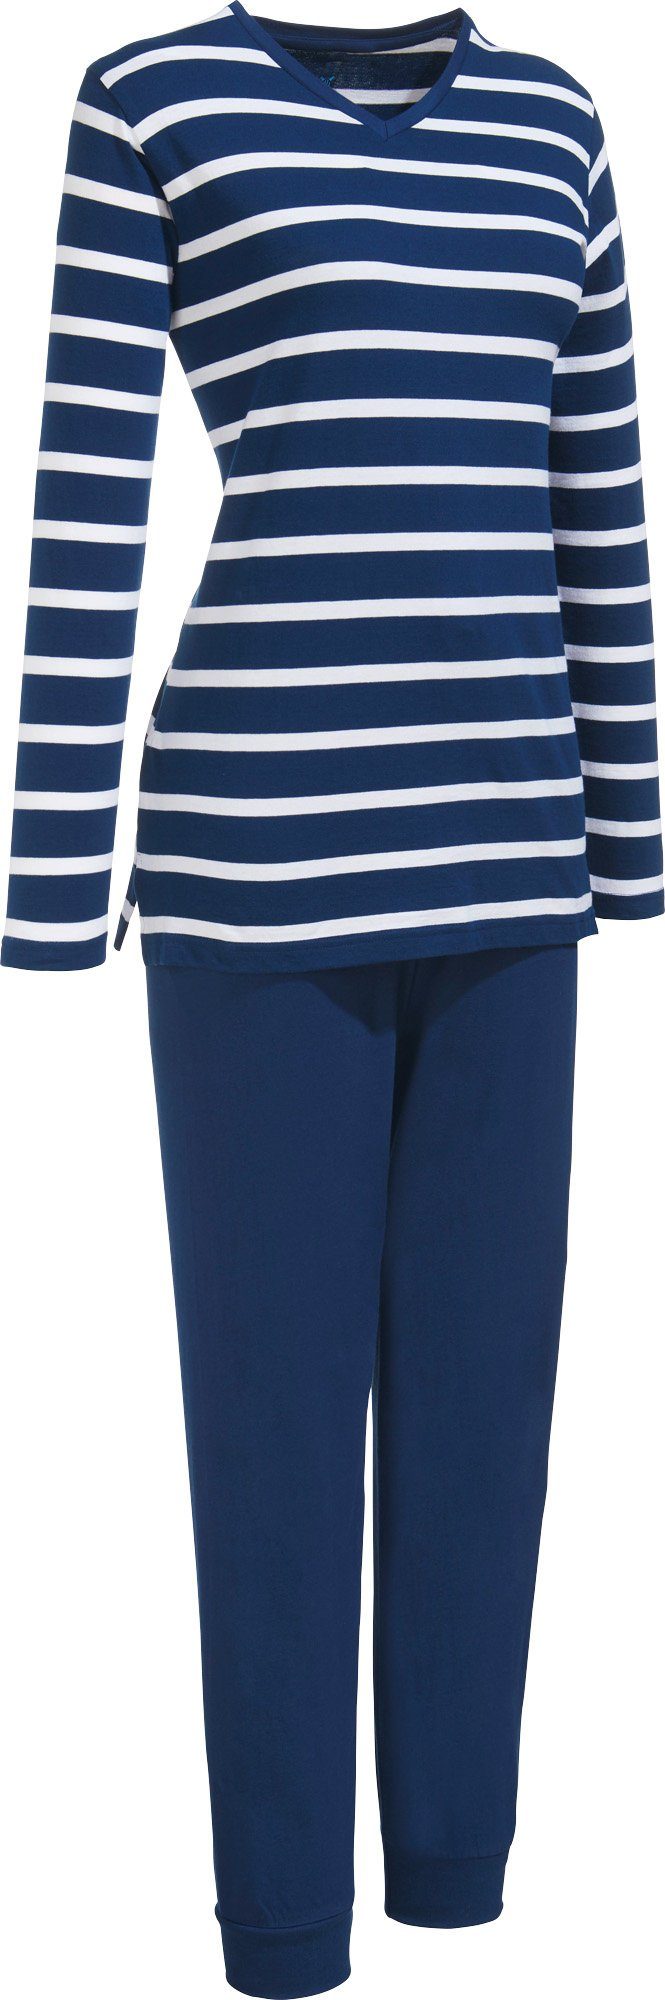 Müller tlg) Damen-Schlafanzug Streifen Pyjama Erwin Single-Jersey (2